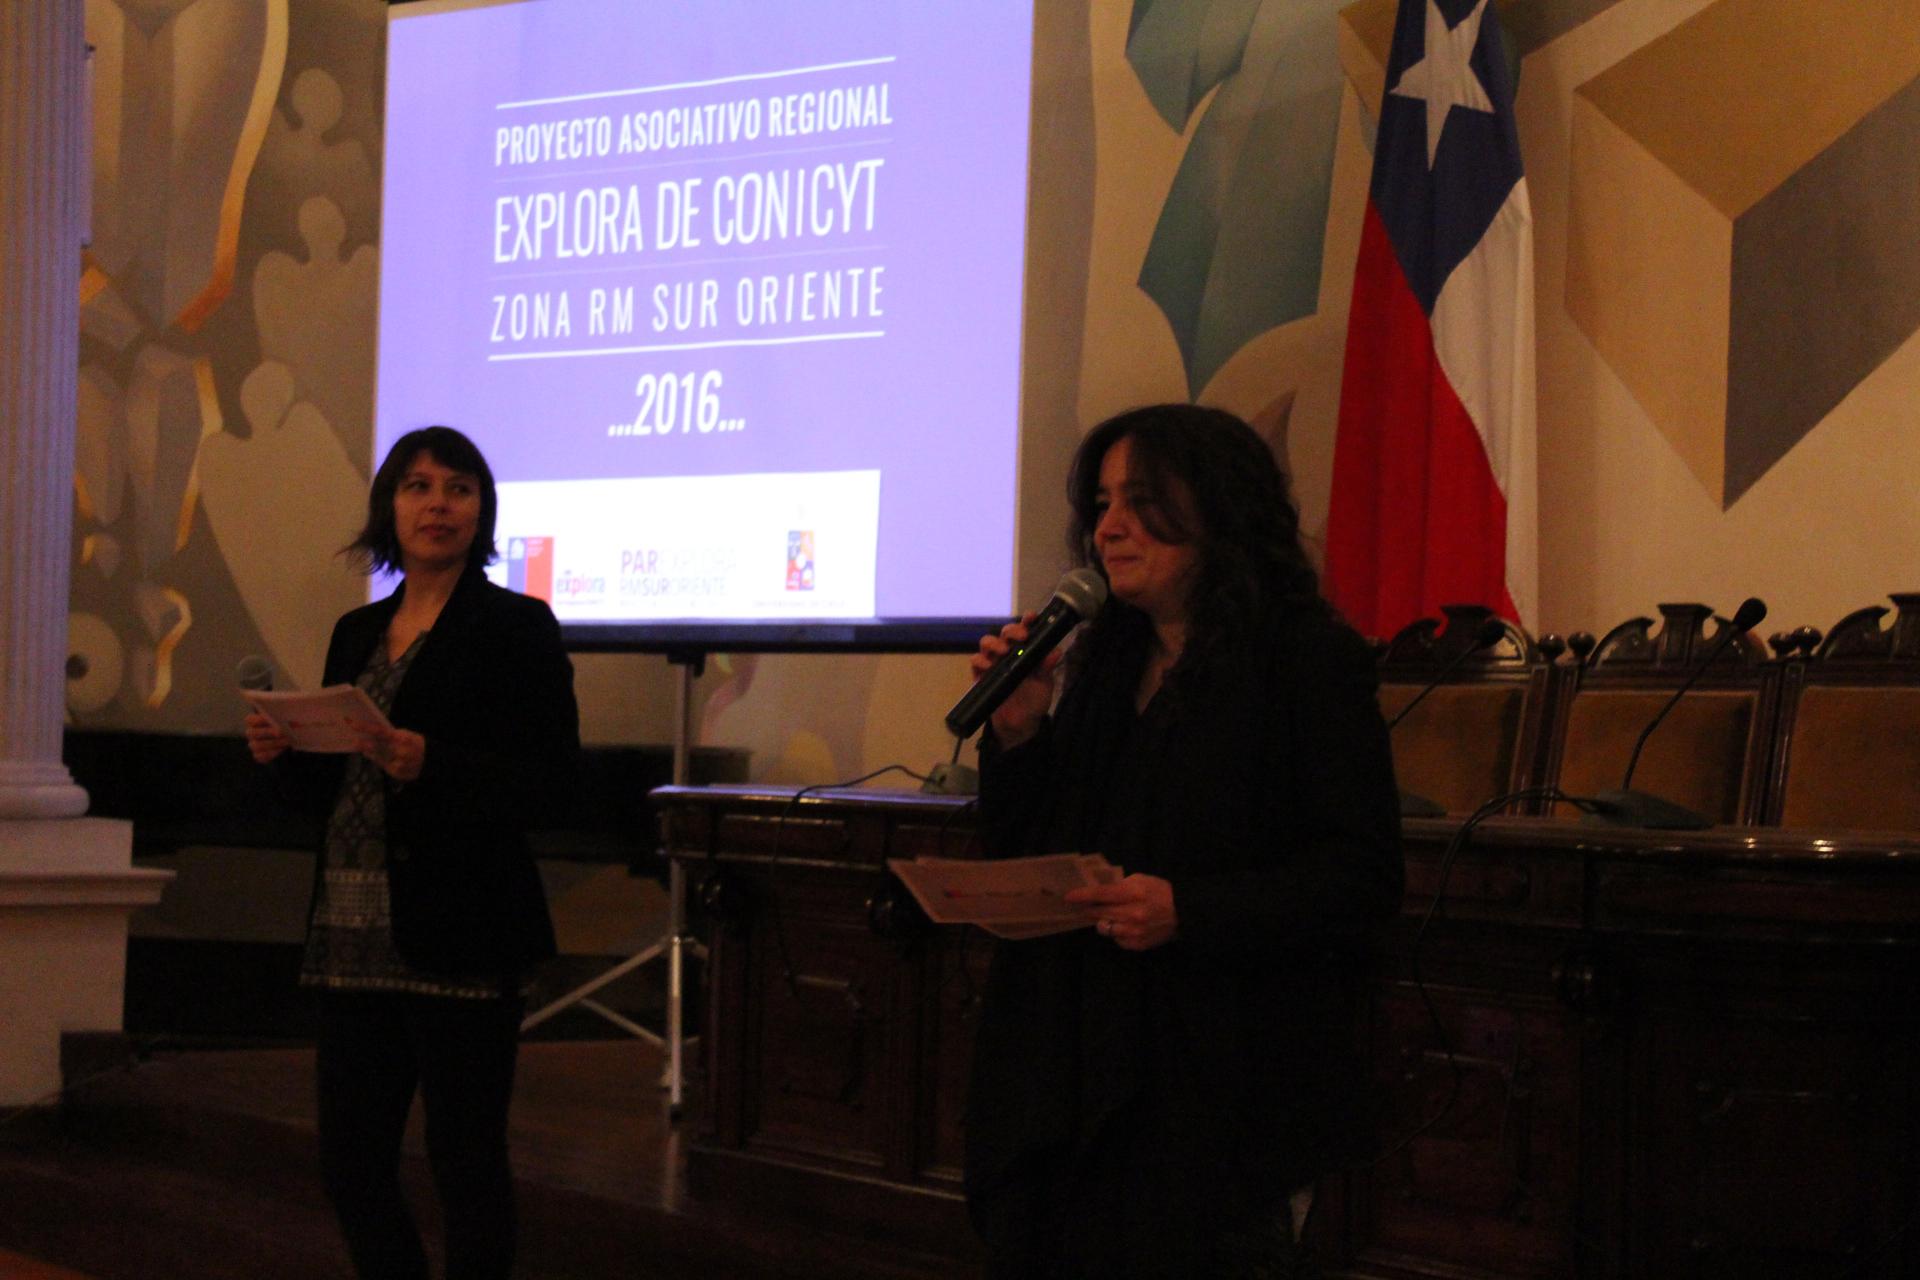 Macarena Ocáriz, directora del PAR Explora de CONICYT RM Sur Oriente, y Carola Gutiérrez coordinadora ejecutiva del proyecto.